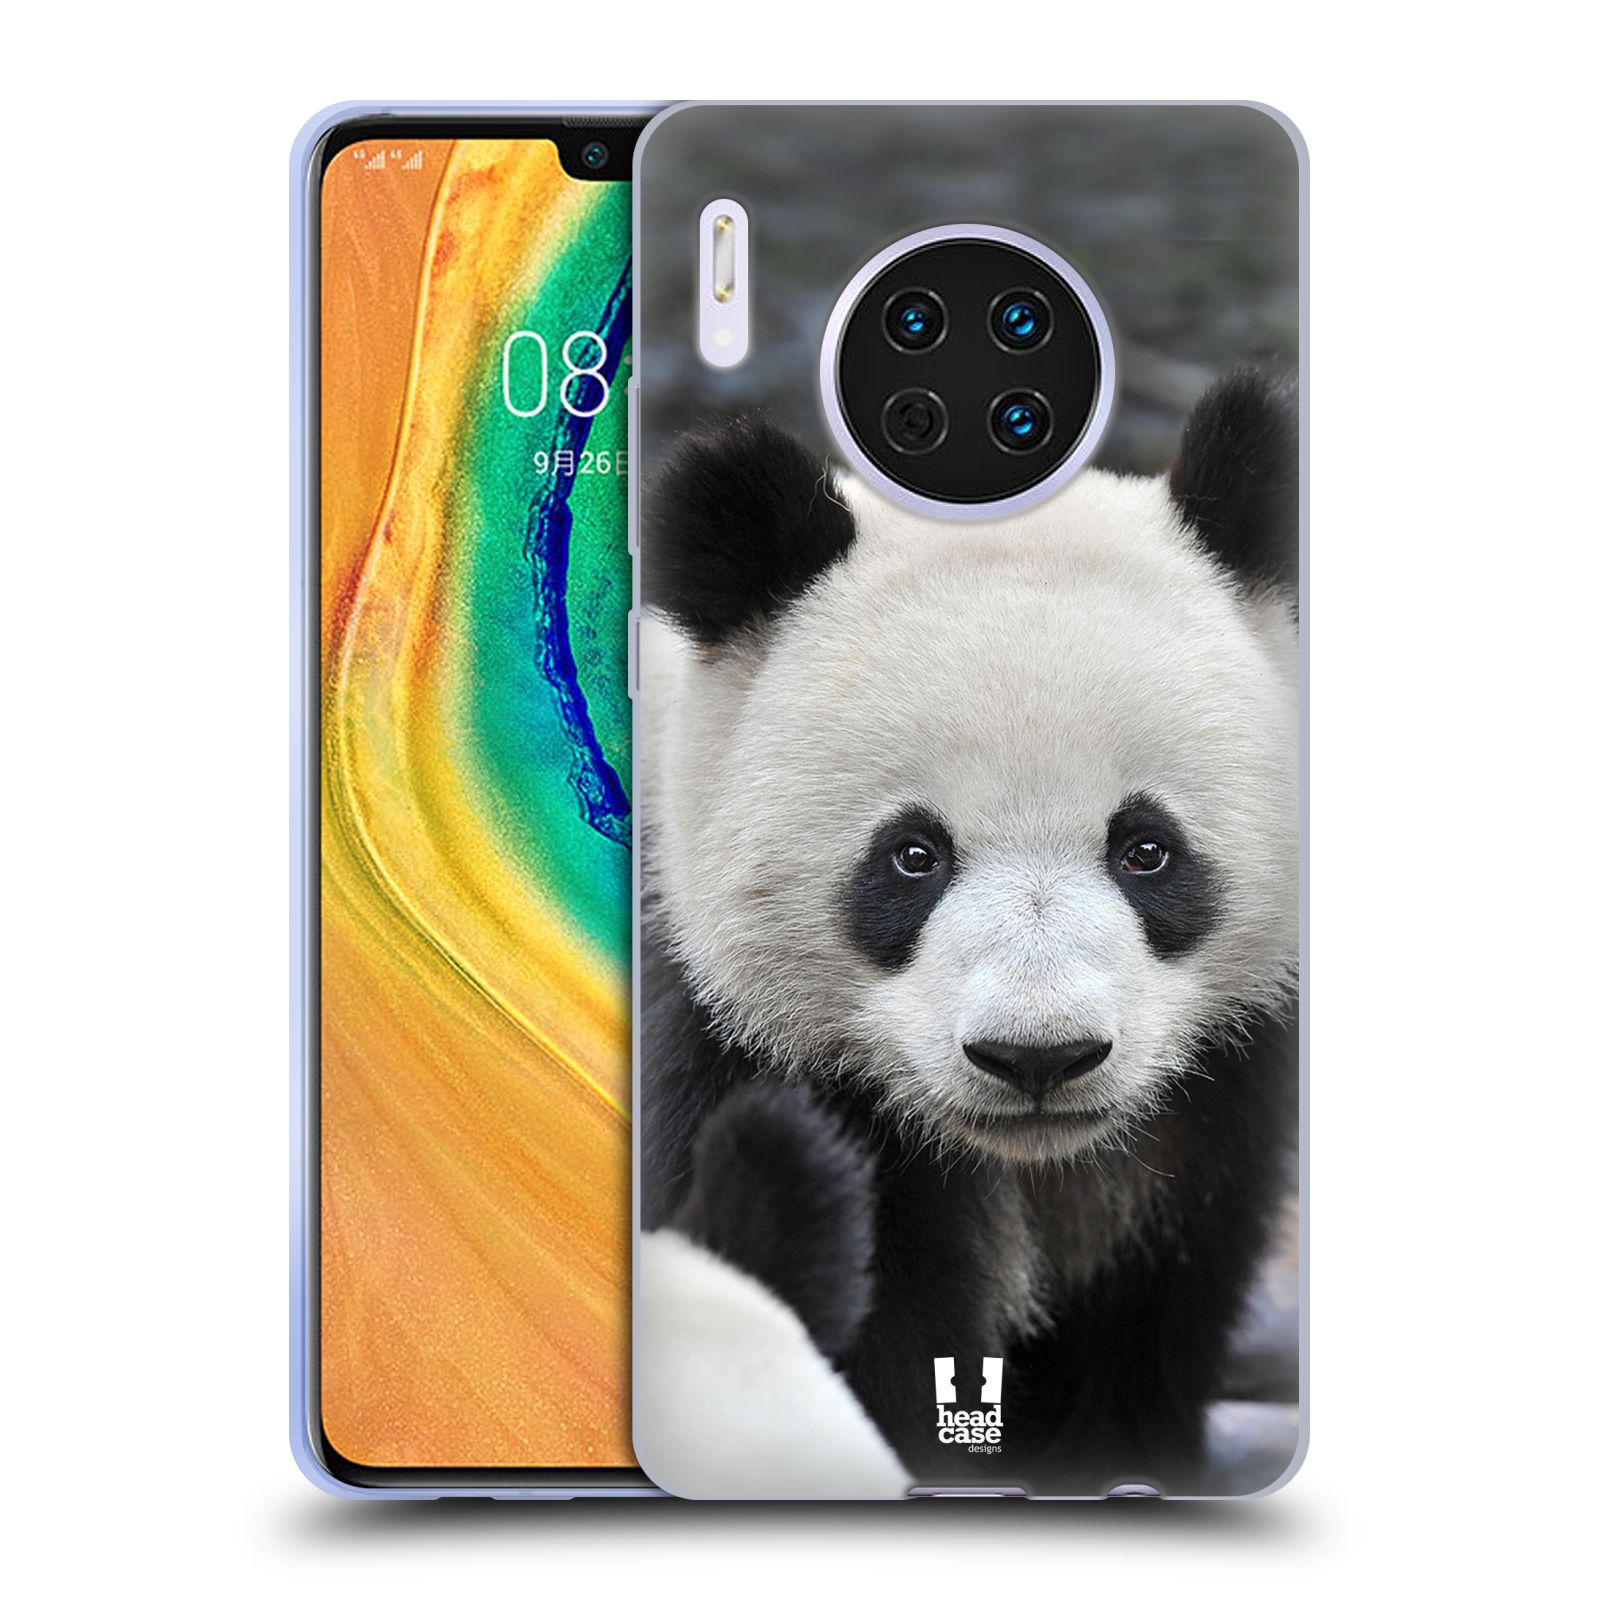 Zadní obal pro mobil Huawei Mate 30 - HEAD CASE - Svět zvířat medvěd panda